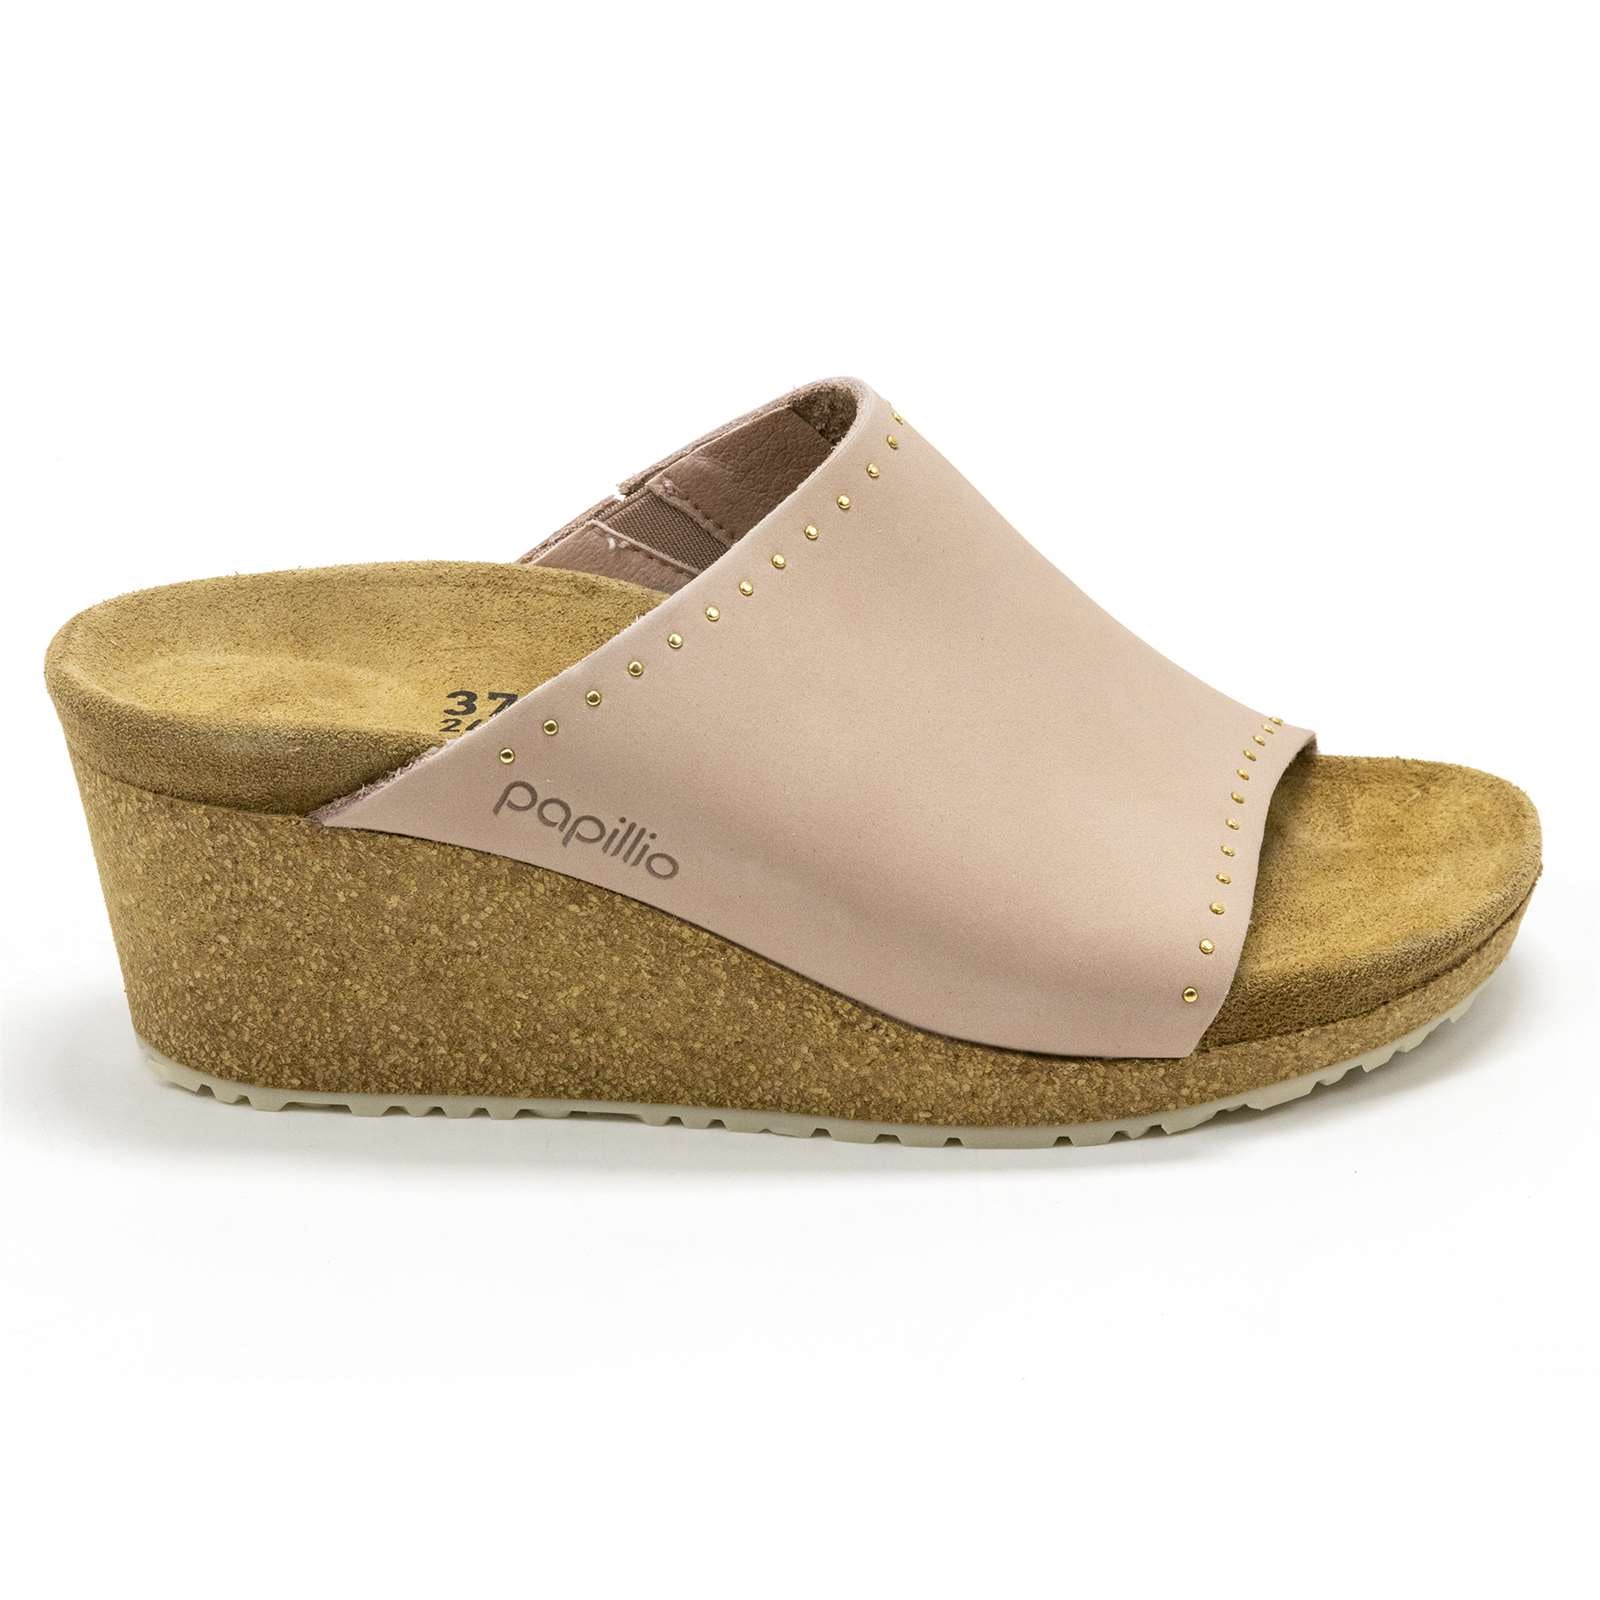 Birkenstock Women Papillio Namica Wedge Sandals